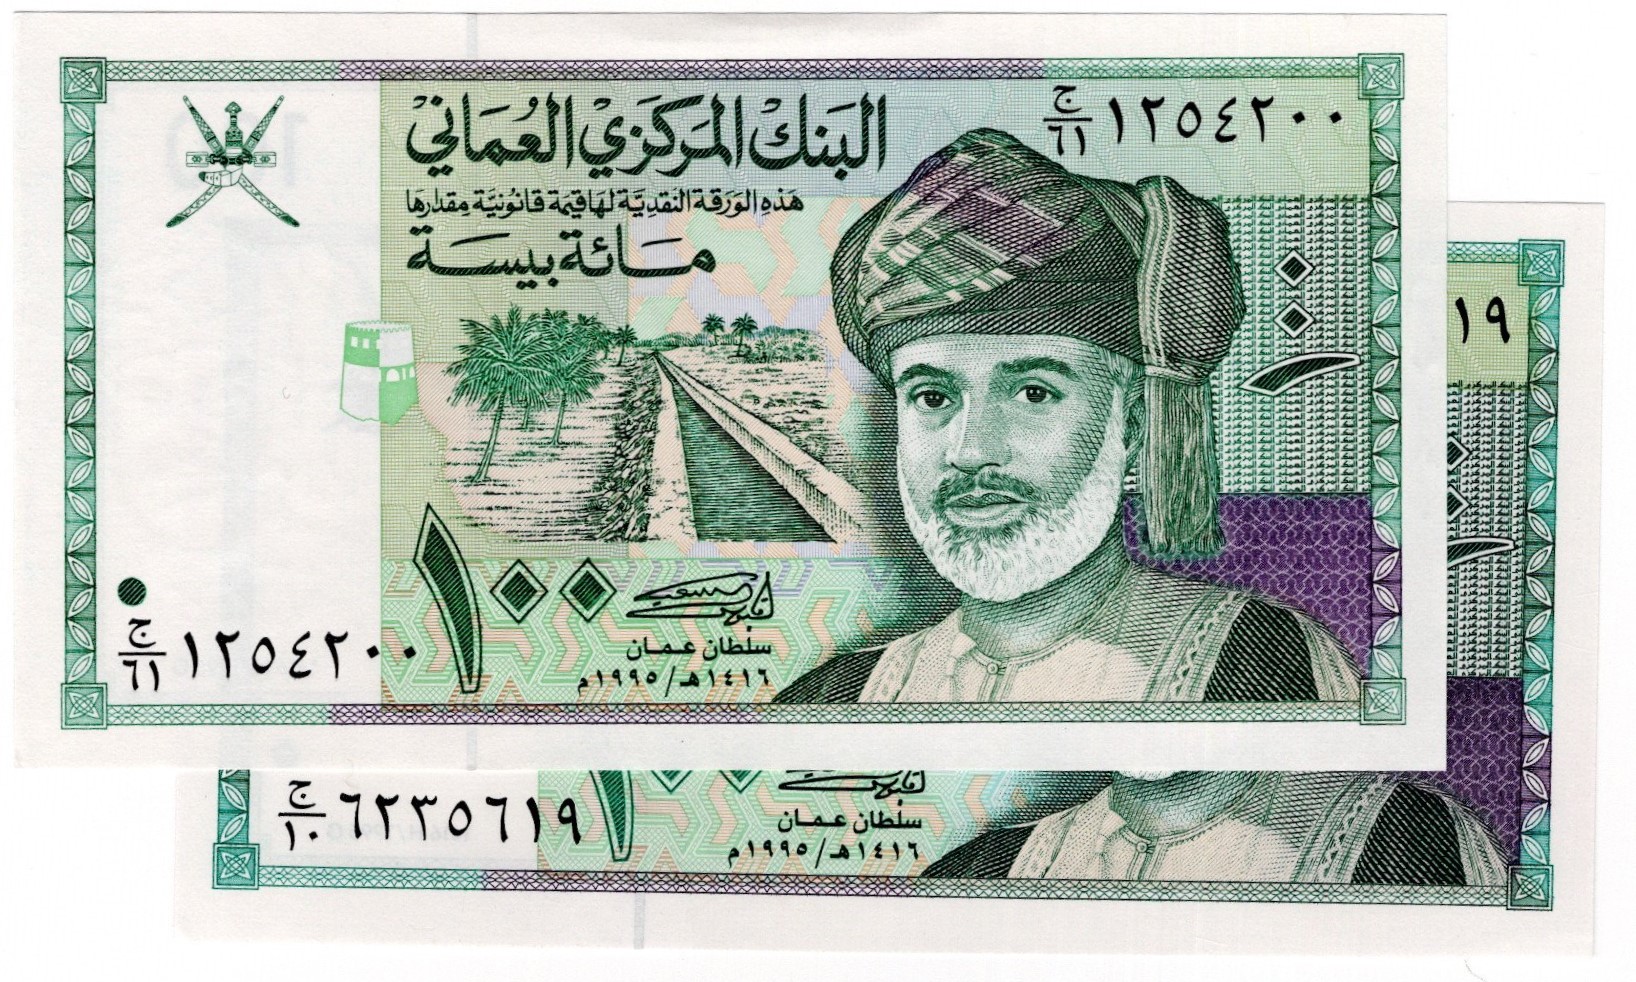 ضريبة الدخل على أصحاب الدخل المرتفع في سلطنة عمان watanserb.com